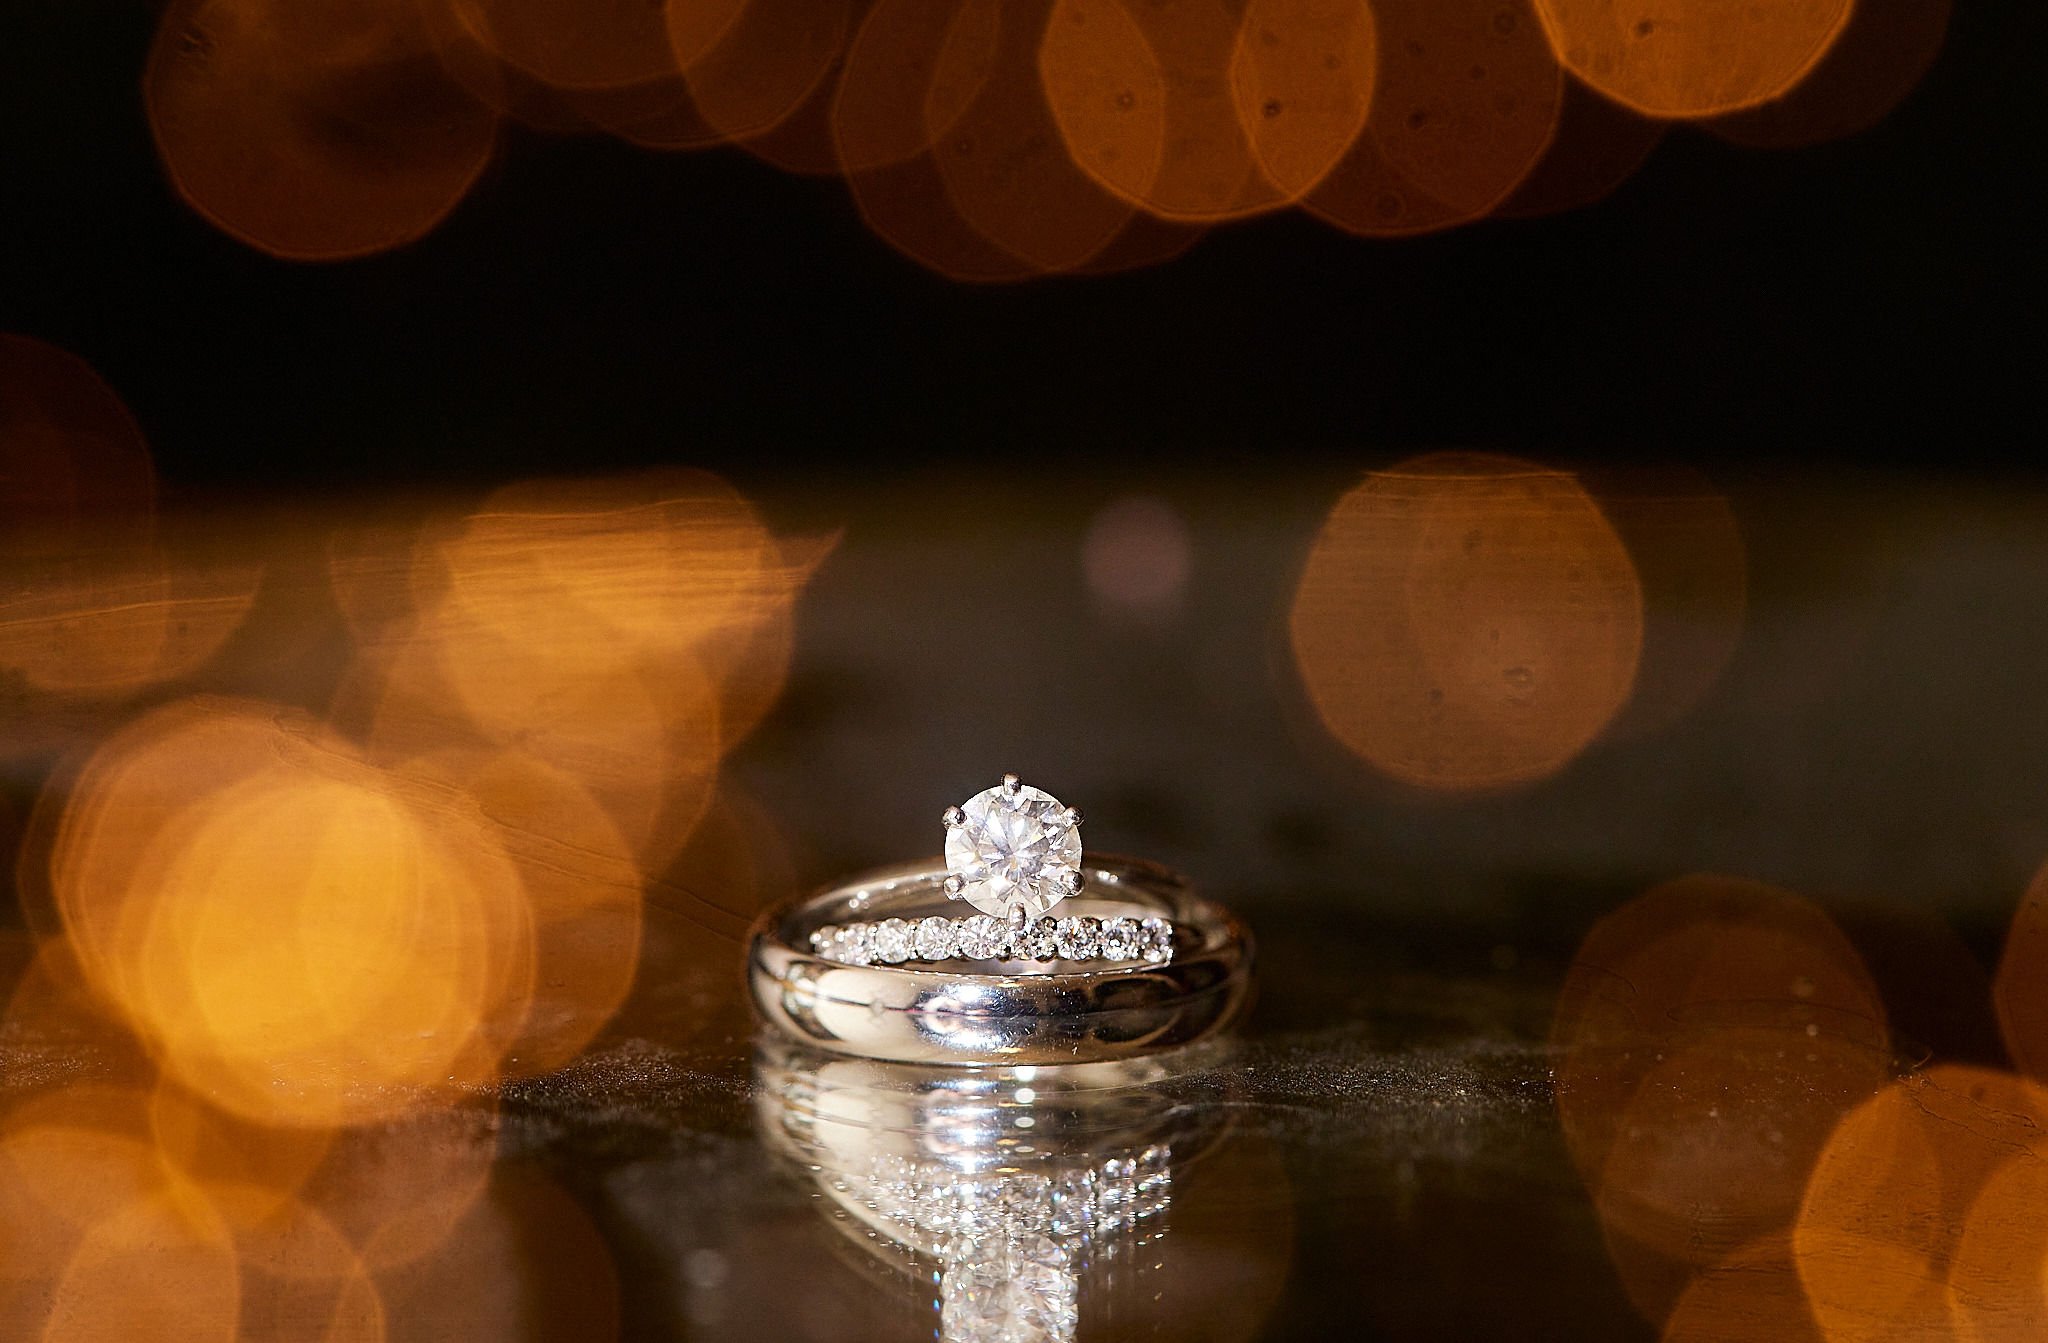 rings at Pylewell Park weddings